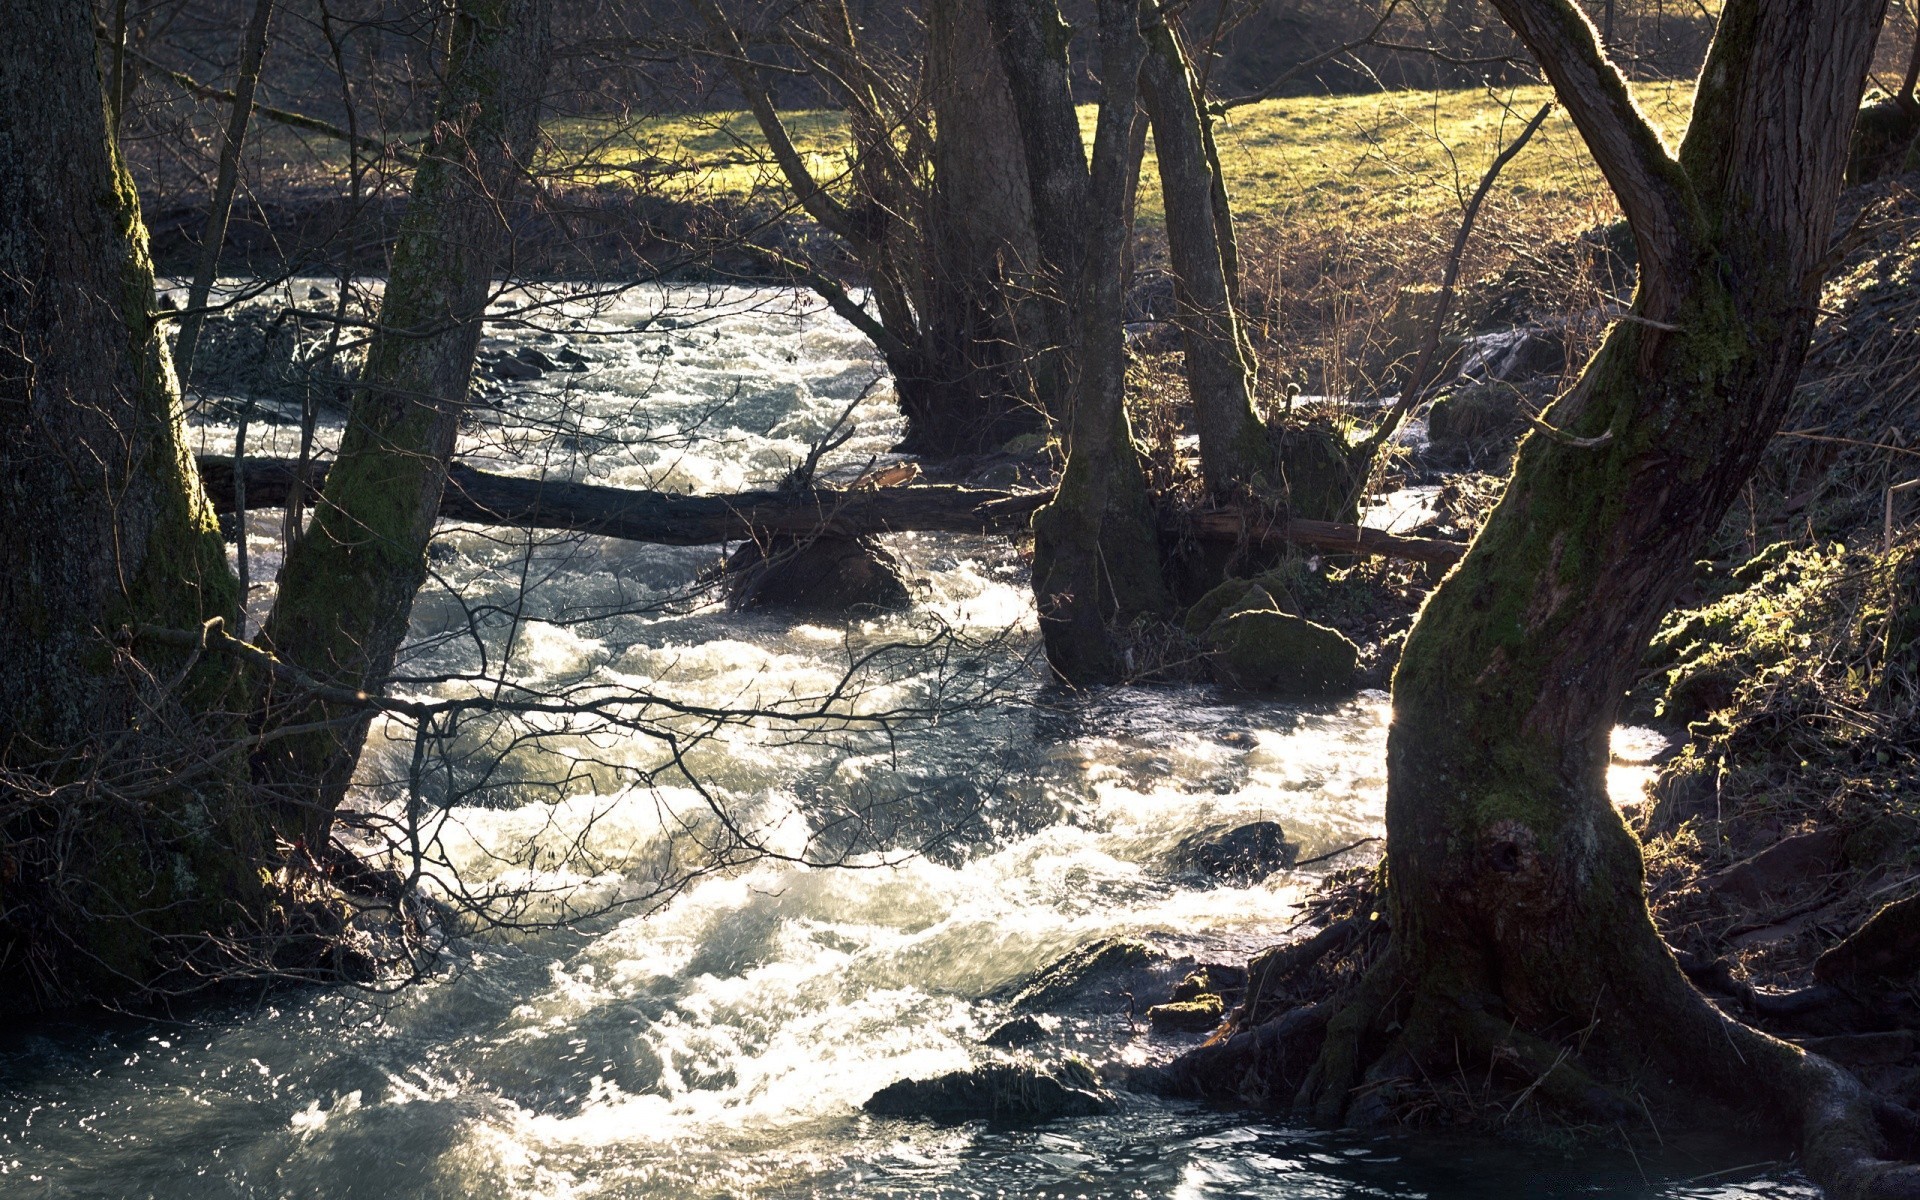 реки пруды и ручьи прудов и ручьев воды дерево древесины природа пейзаж на открытом воздухе осень река путешествия среды лист парк поток живописный